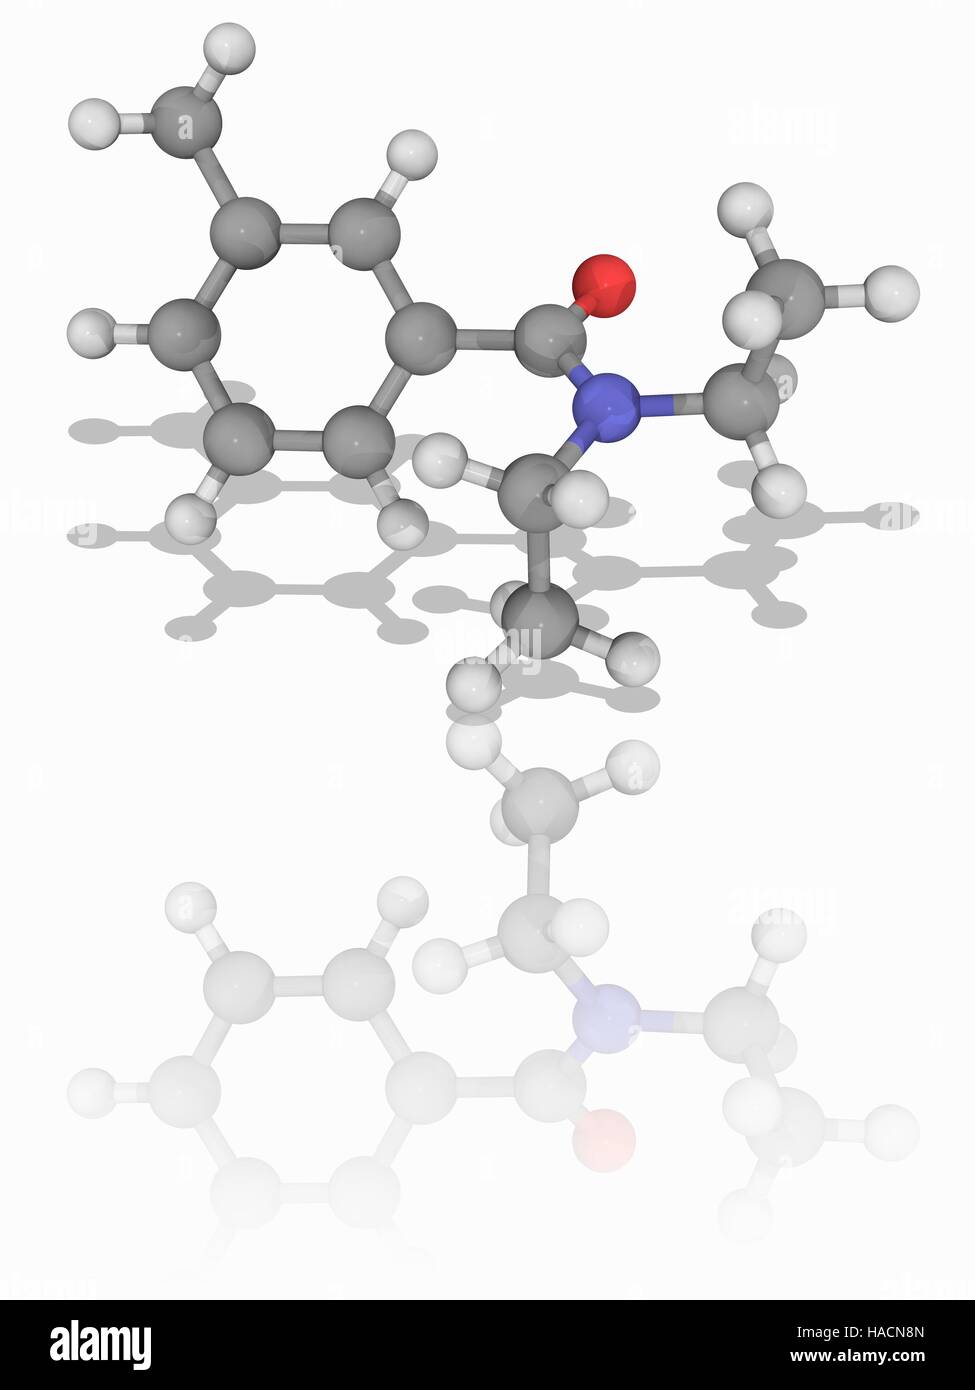 Diethyltoluamid (DEET). Molekulares Modell des Insektenschutz Diethyltoluamid (C12. H17. Navi), allgemein bekannt als DEET. Atome als Kugeln dargestellt werden und sind farblich gekennzeichnet: Kohlenstoff (grau), Wasserstoff (weiß), Stickstoff (blau) und Sauerstoff (rot). Abbildung. Stockfoto